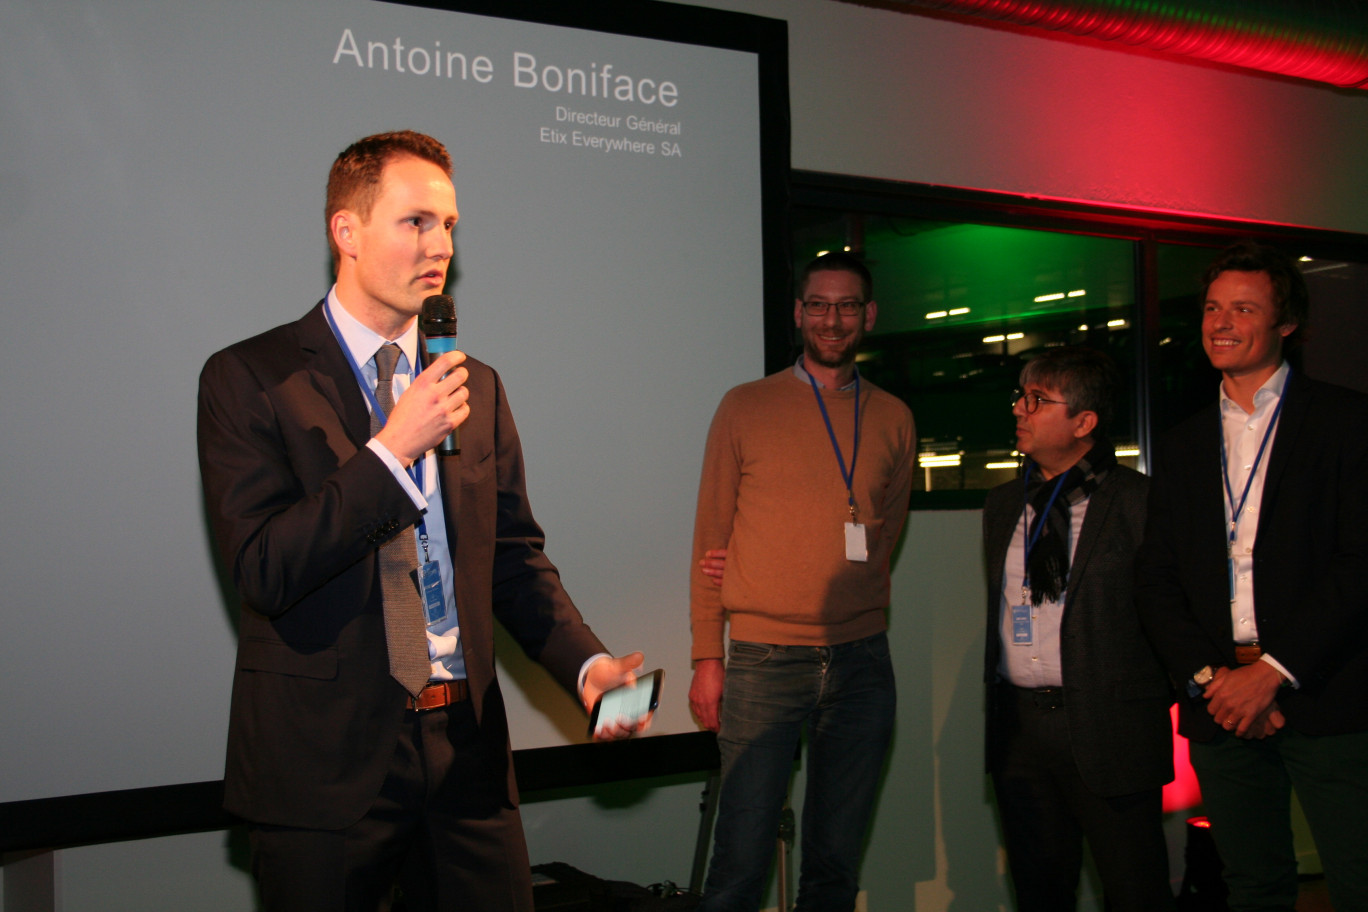 À gauche, Antoine Boniface, président d'Etix Everywhere, lors du lancement du data center Etix Lille #1 à la Plaine Images.